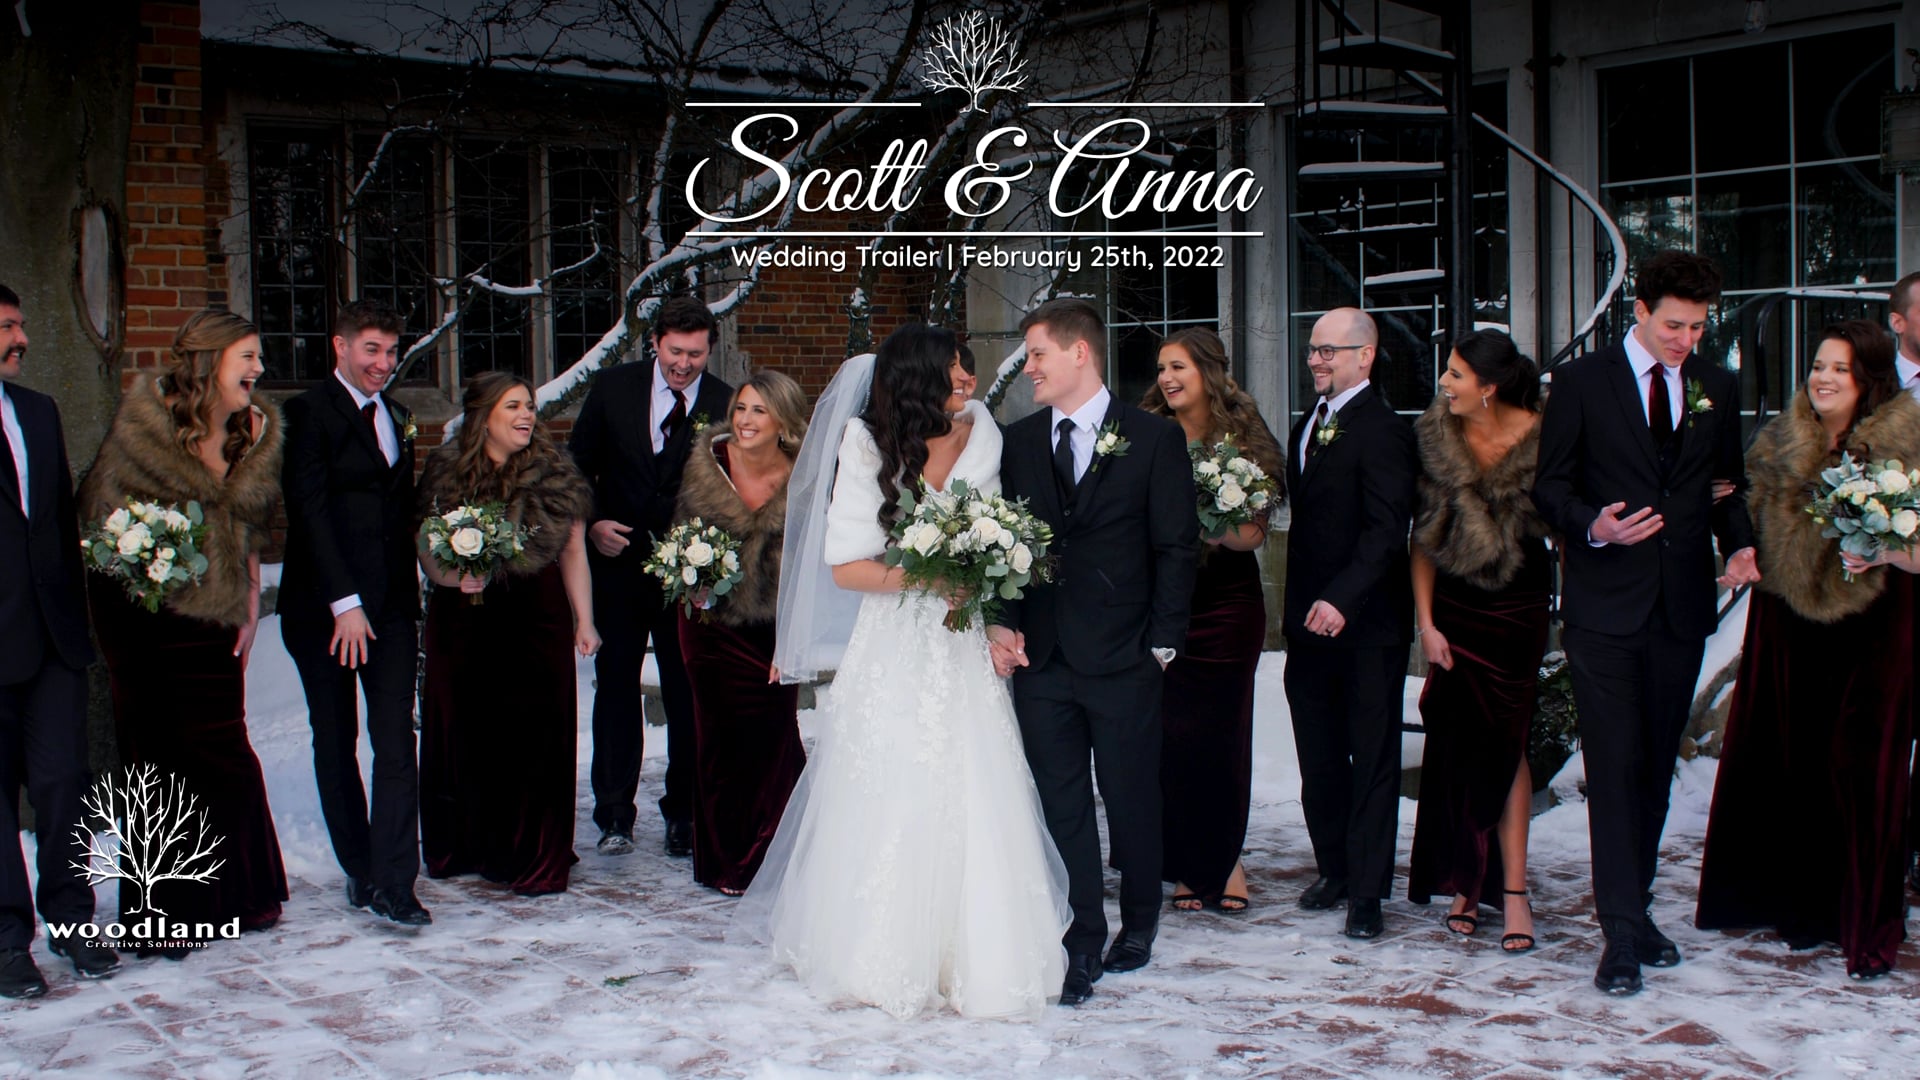 Scott & Anna - Wedding Trailer